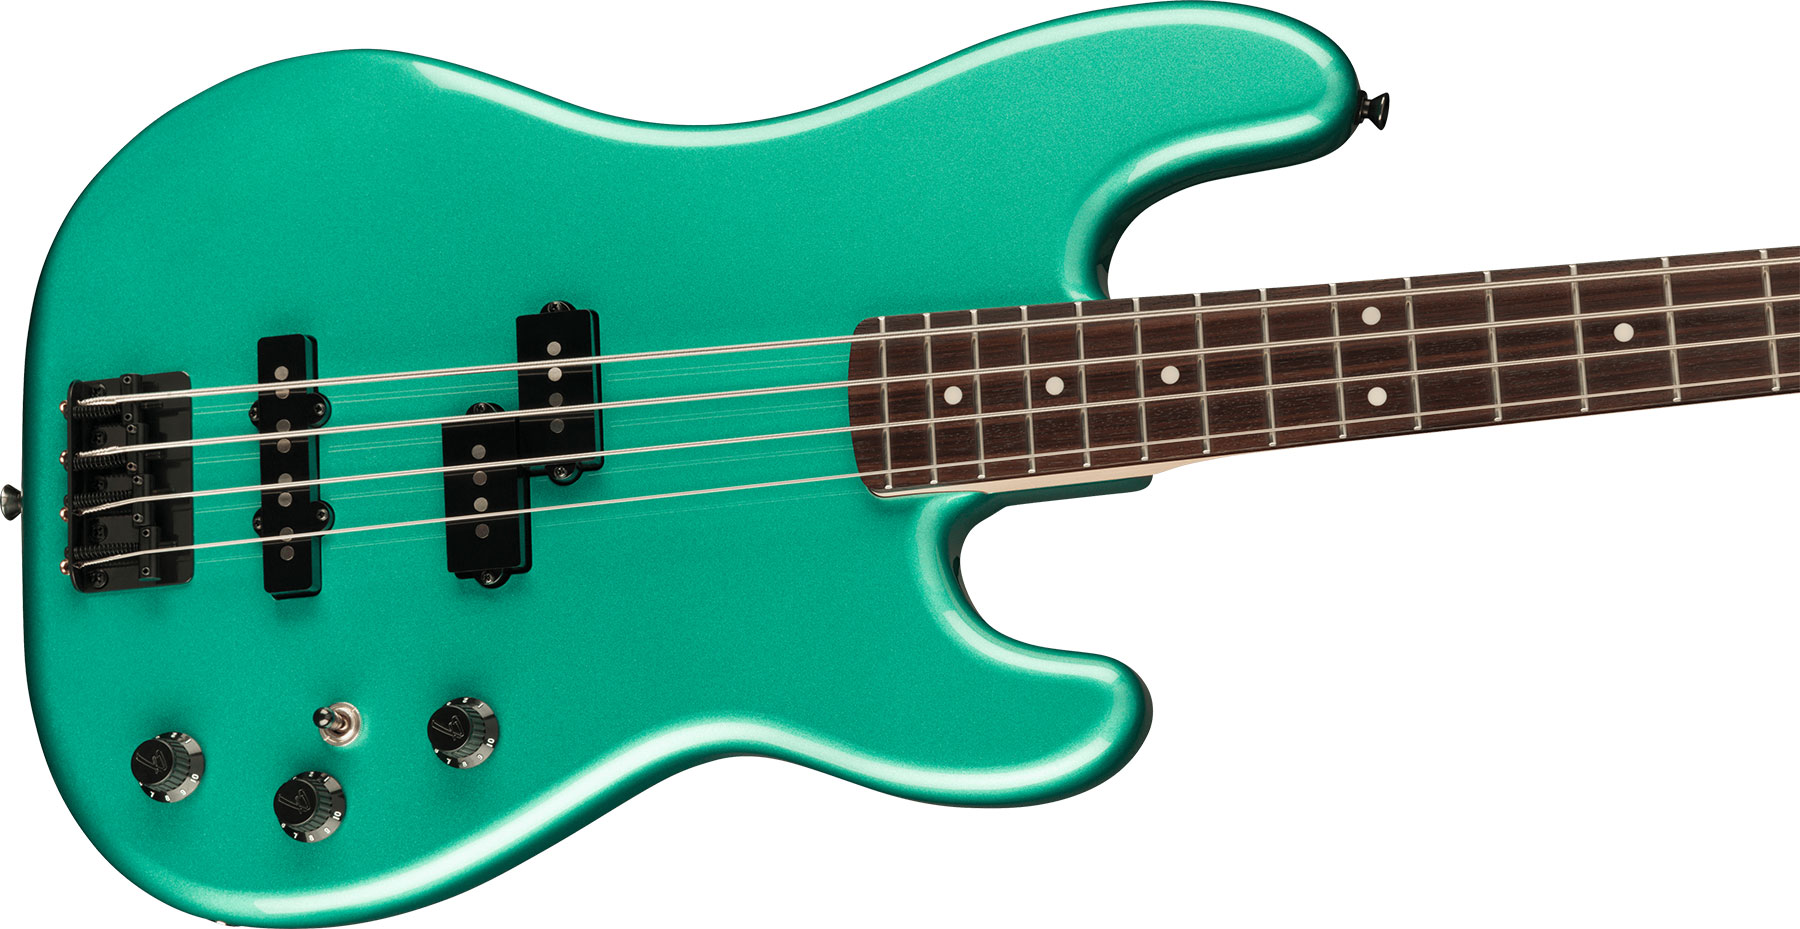 Fender Precision Bass Pj Boxer Jap Rw - Sherwood Green Metallic - Bajo eléctrico de cuerpo sólido - Variation 2